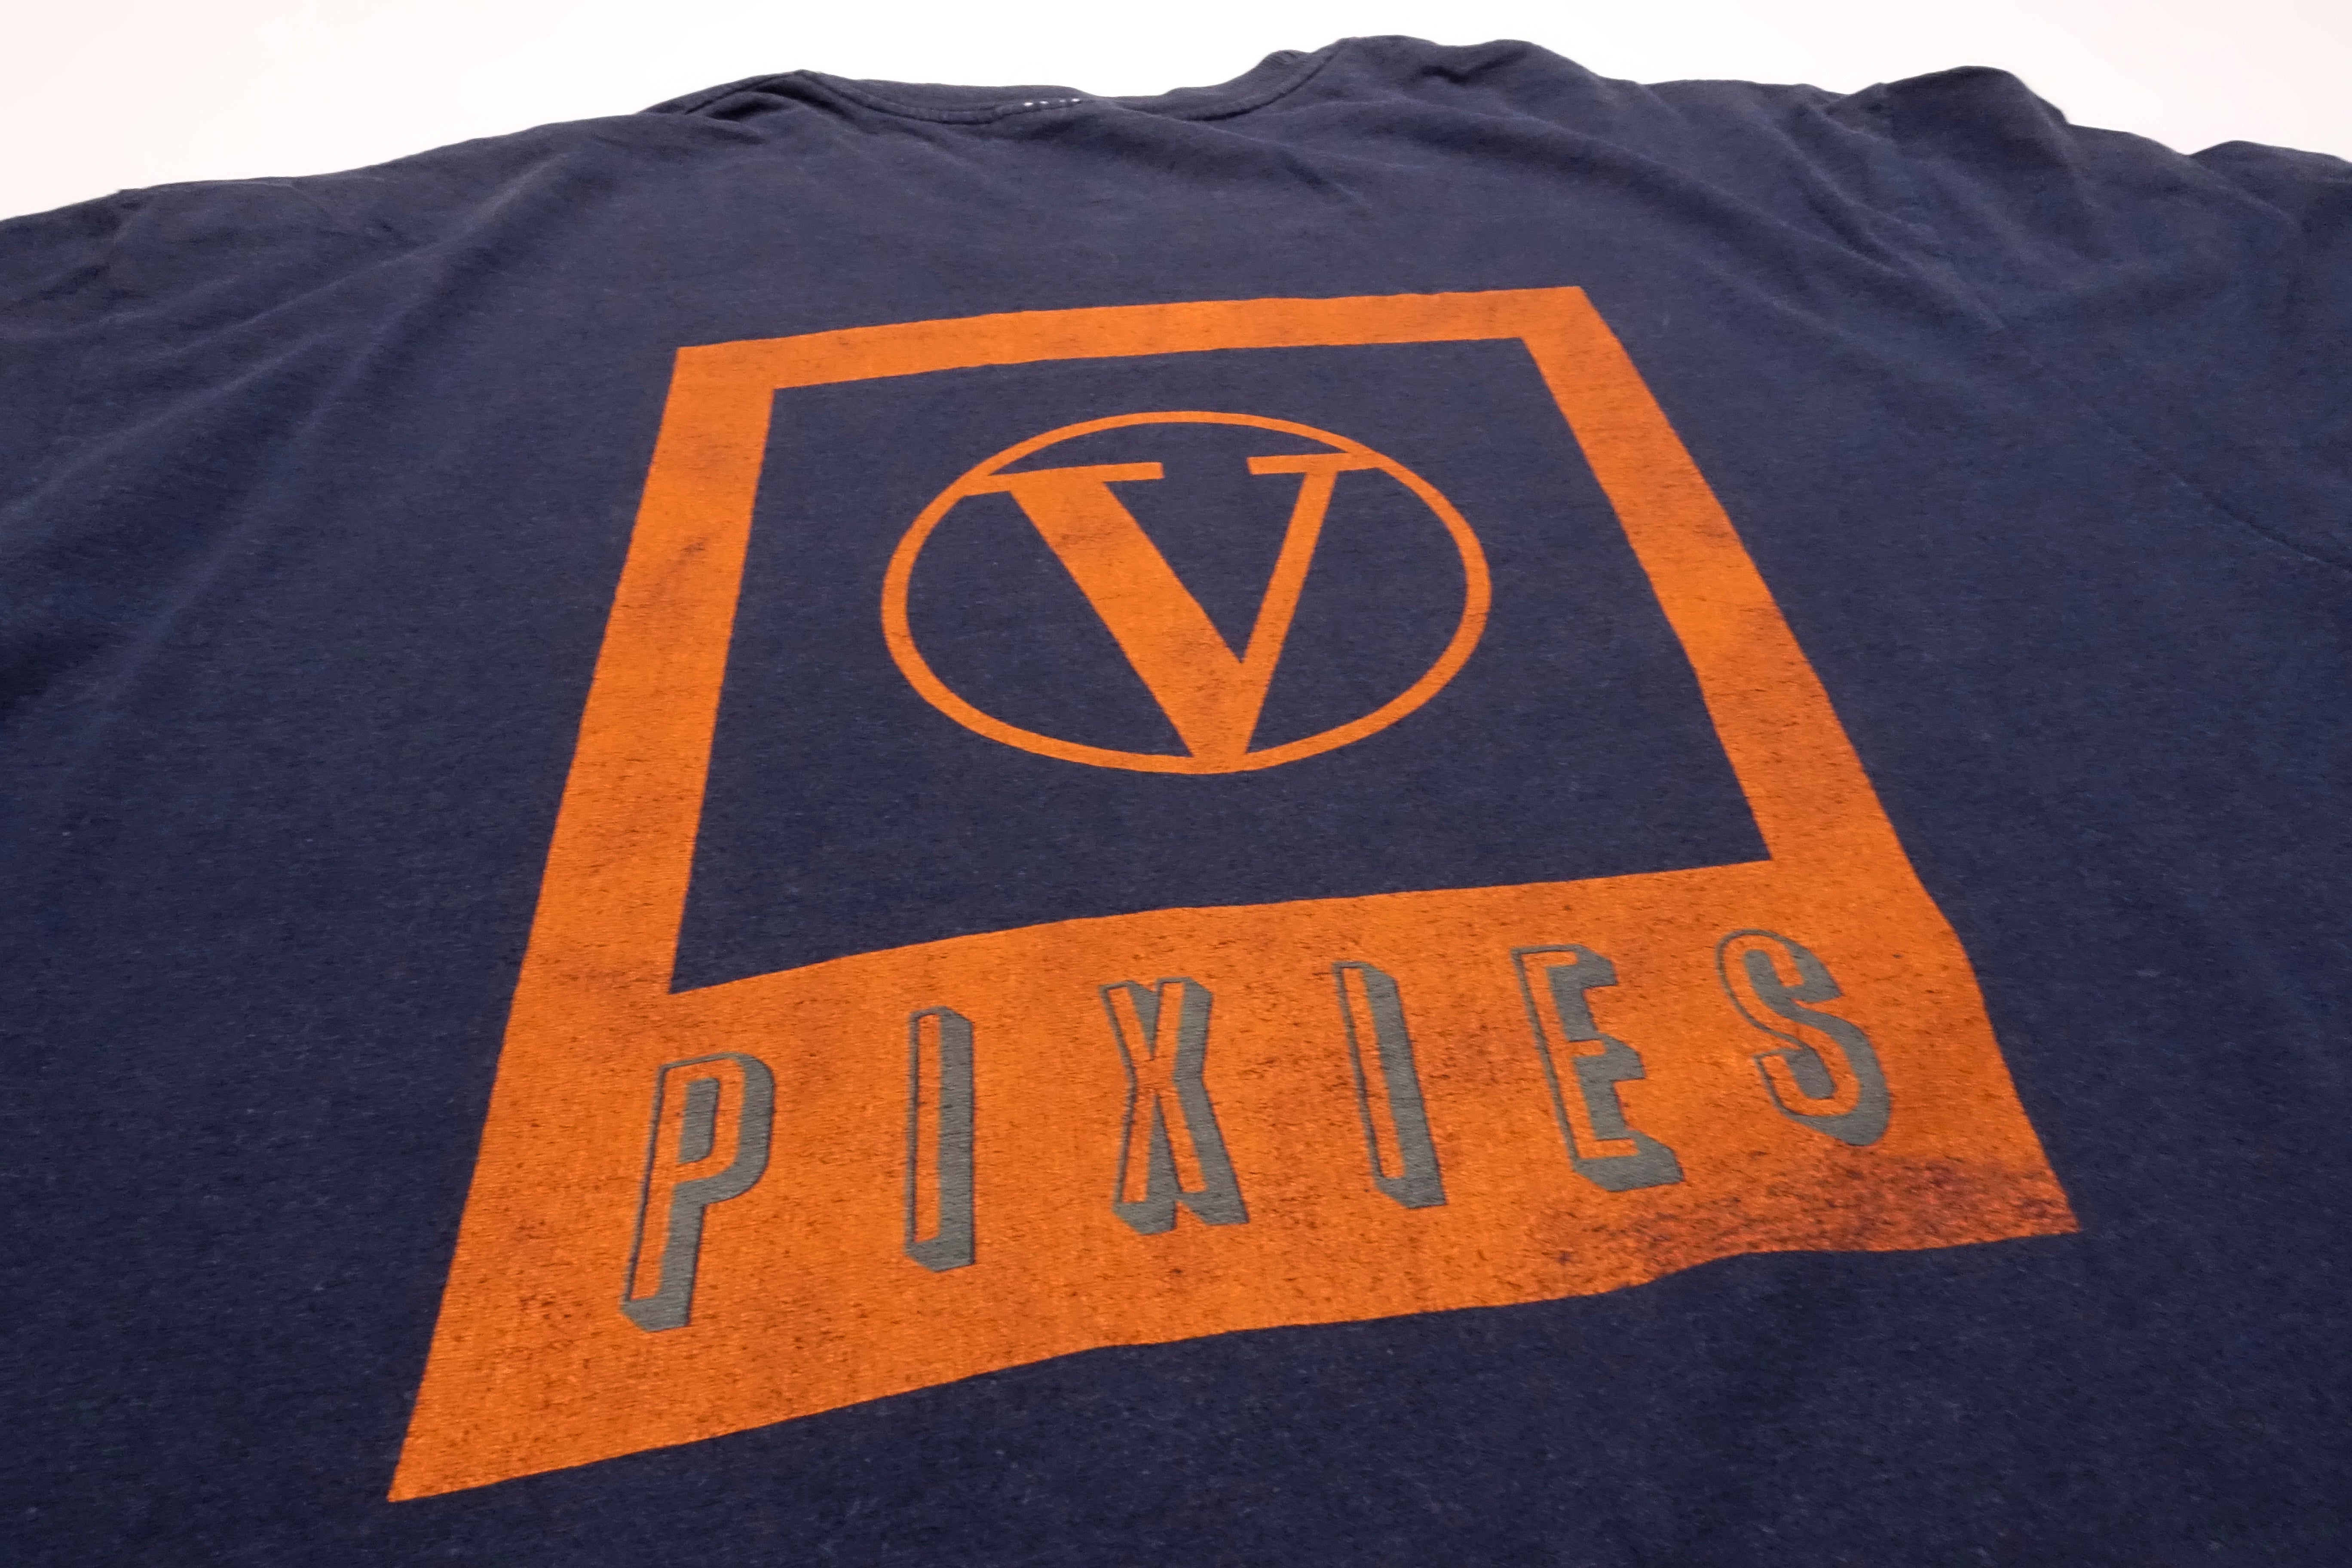 Pixies - Velouria Tour Shirt Size XL / Large